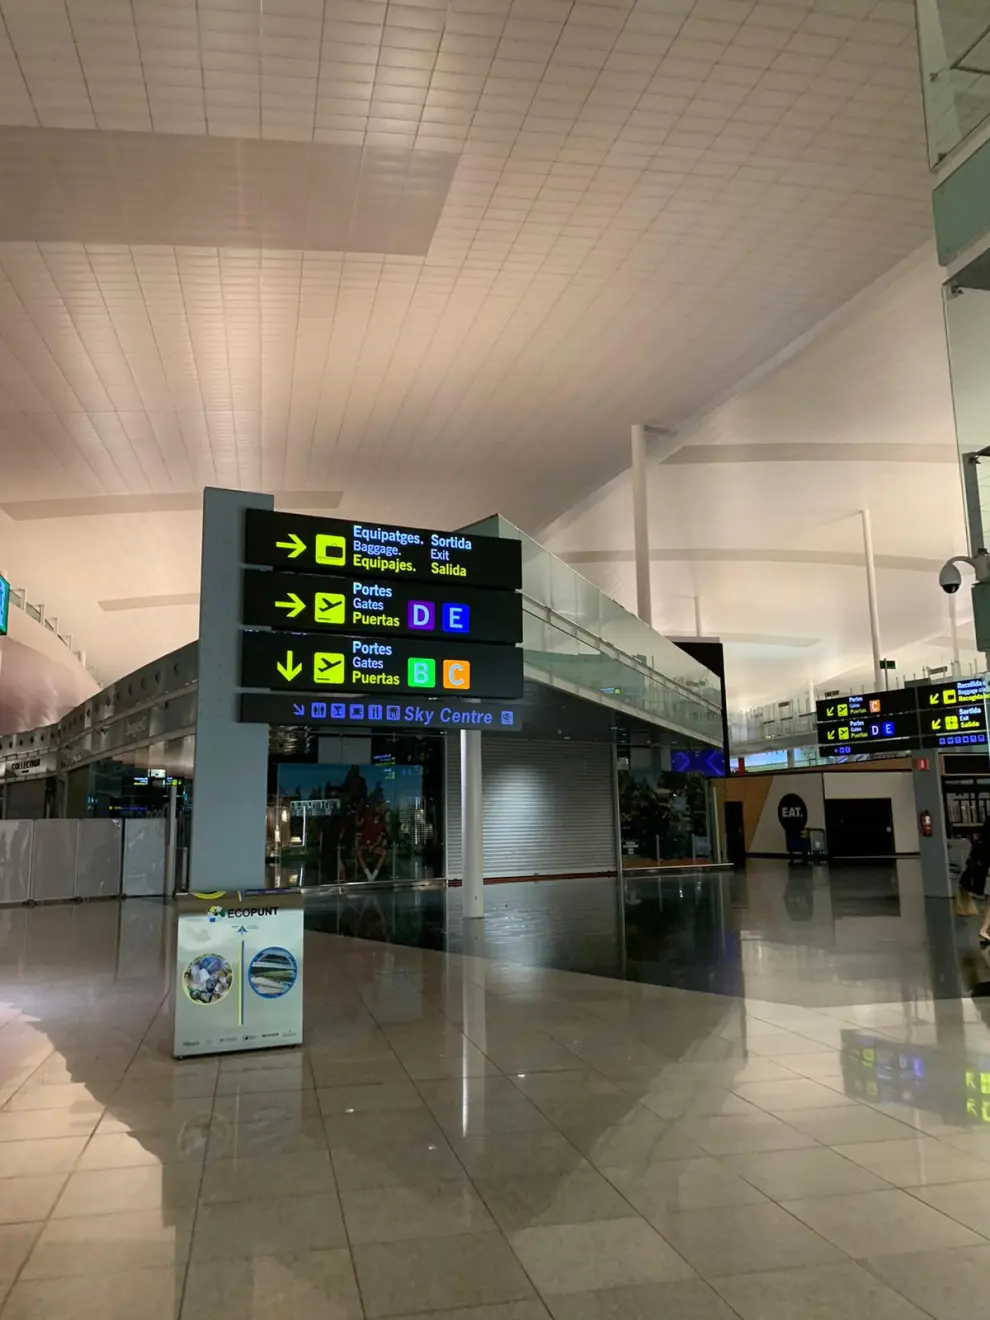 El ingeniero zaragozano Héctor Ochoa ha vuelto este miércoles a su ciudad después de tres meses atrapado por la pandemia en Trebisonda (Turquía). Así ha vivido la "nueva normalidad" en aeropuertos y estaciones de tren.